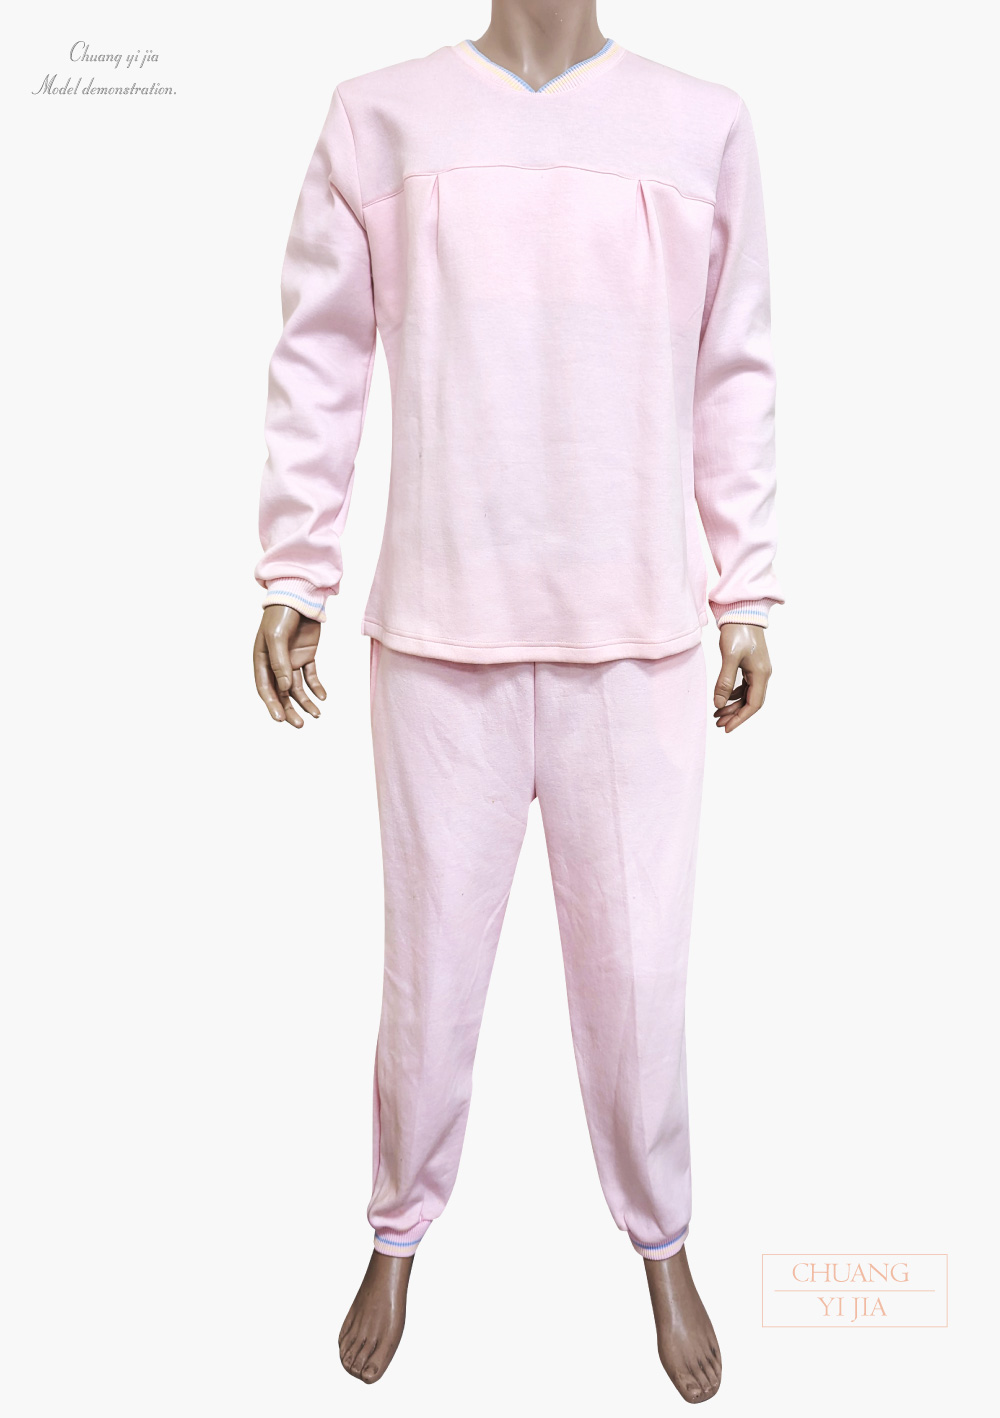 創e家團體服-健檢服-V領-粉紅 正面套裝